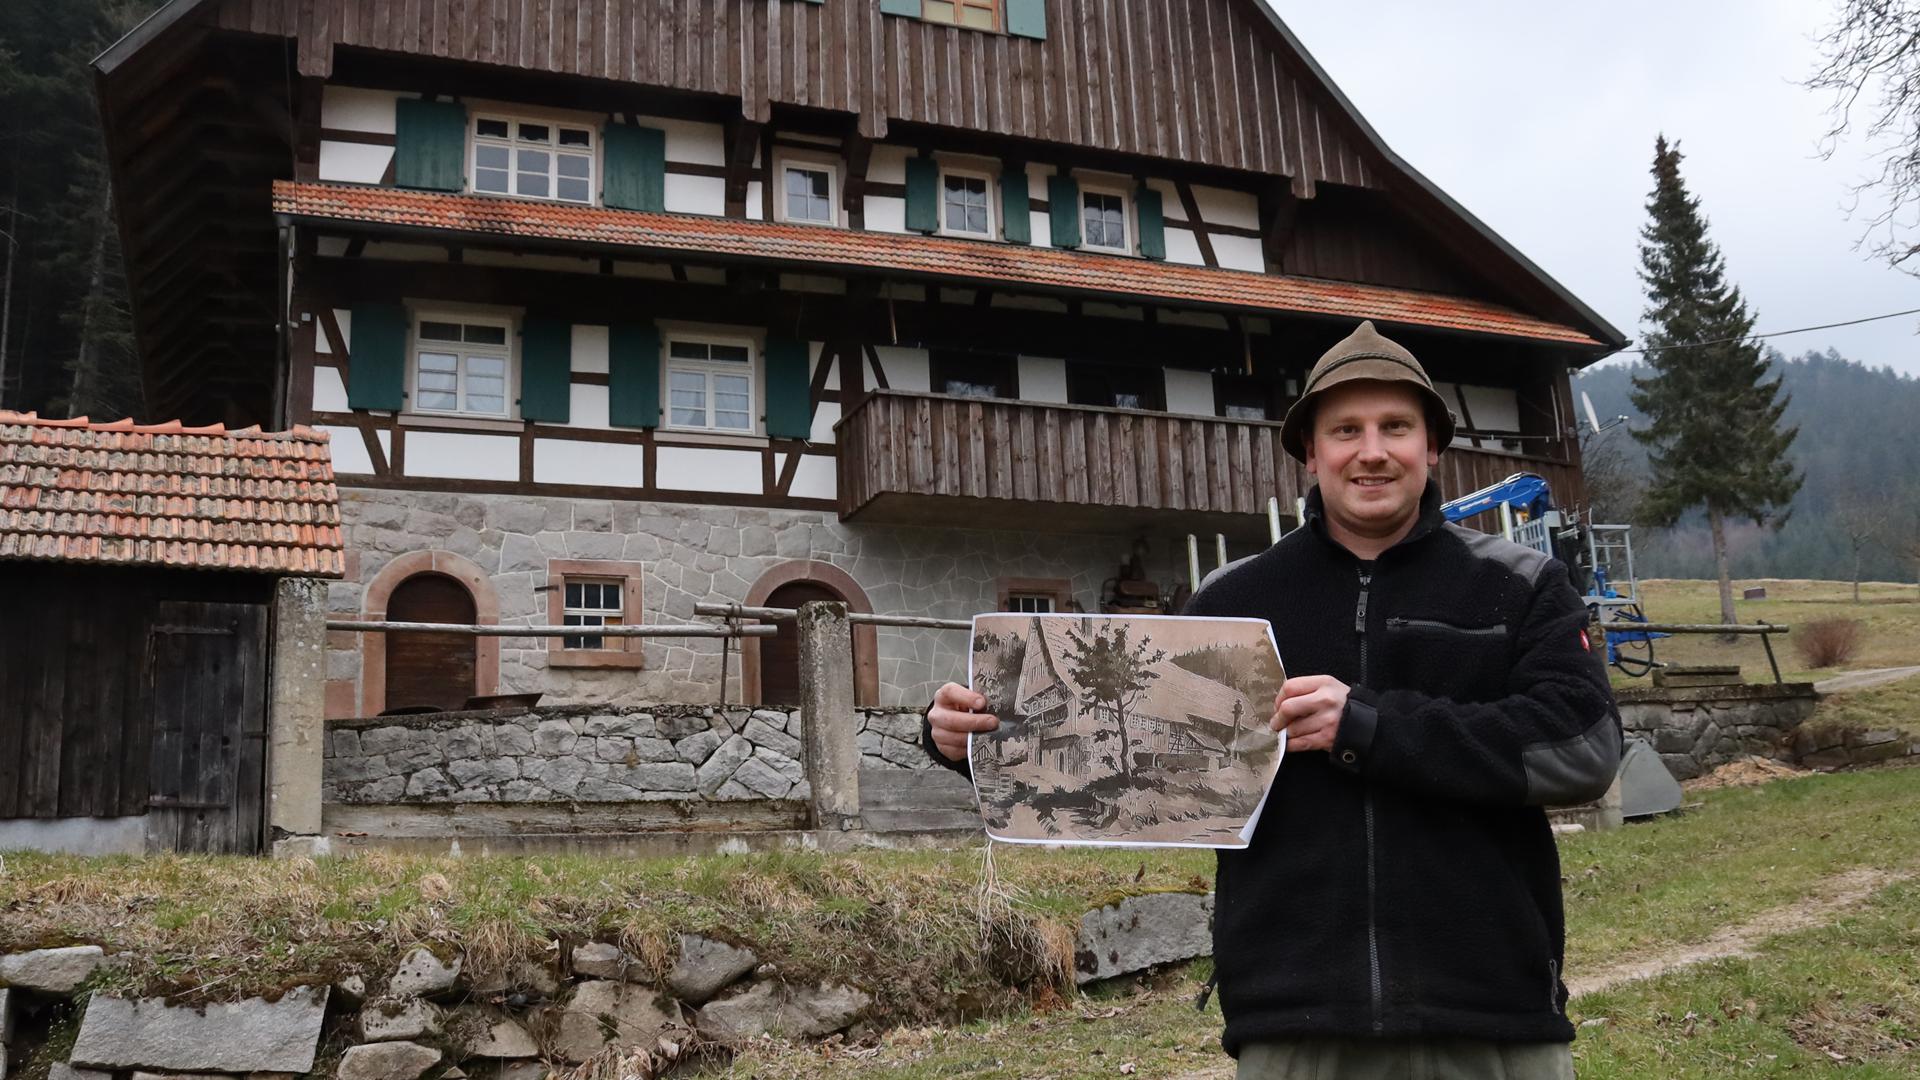 Alte-Häuser-Serie- Der über 350 Jahre alte Deckerhof in Seebach kommt in der Mummelsee-Sage mit dem vorwitzigen Jungbauern vor, der die Nixen hereinlegte. 